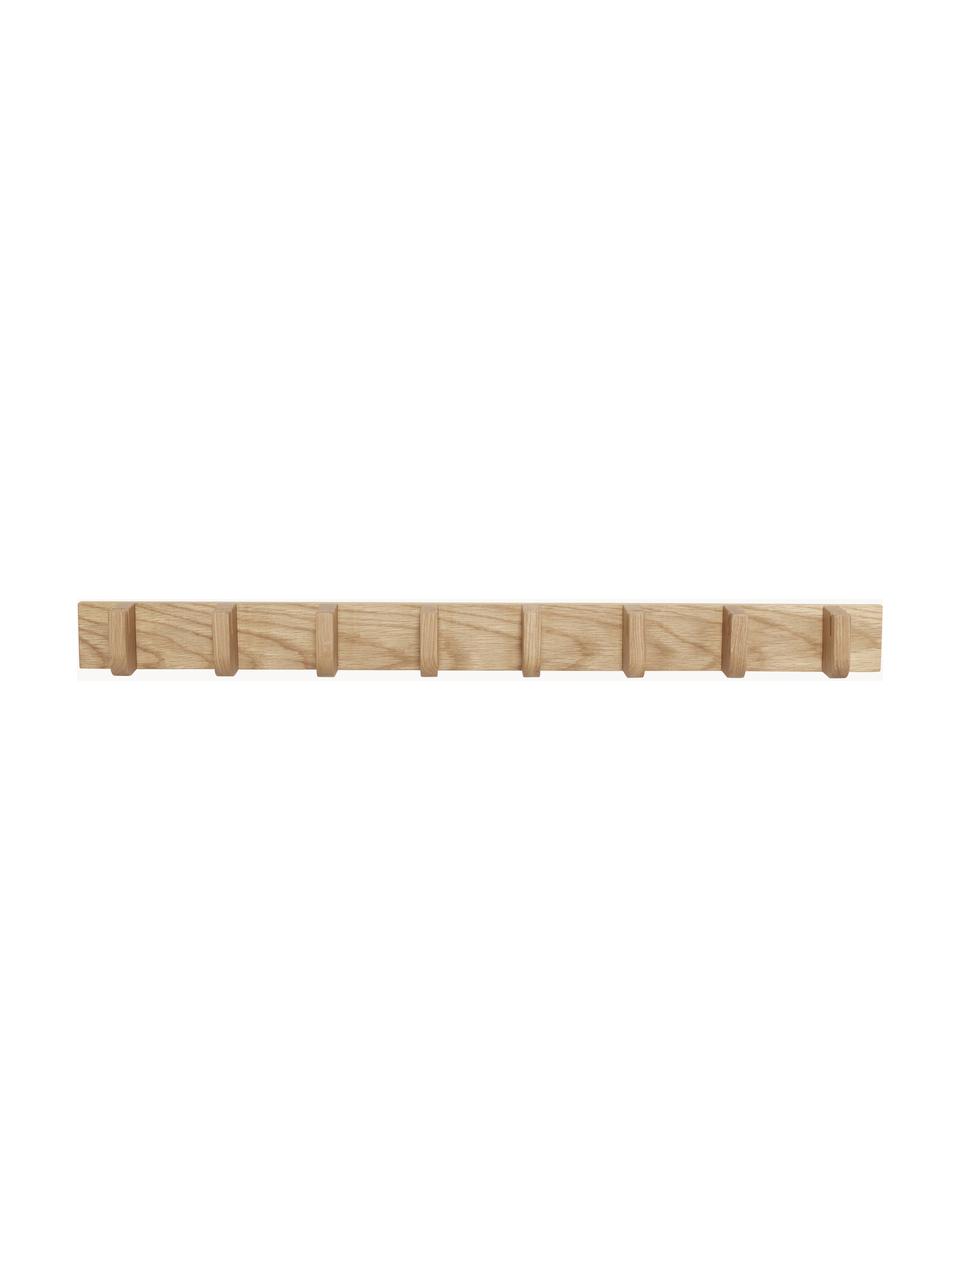 Nástěnný věšák z dubového dřeva Nomad, Dubové dřevo

Tento produkt je vyroben z udržitelných zdrojů dřeva s certifikací FSC®., Dubové dřevo, Š 96 cm